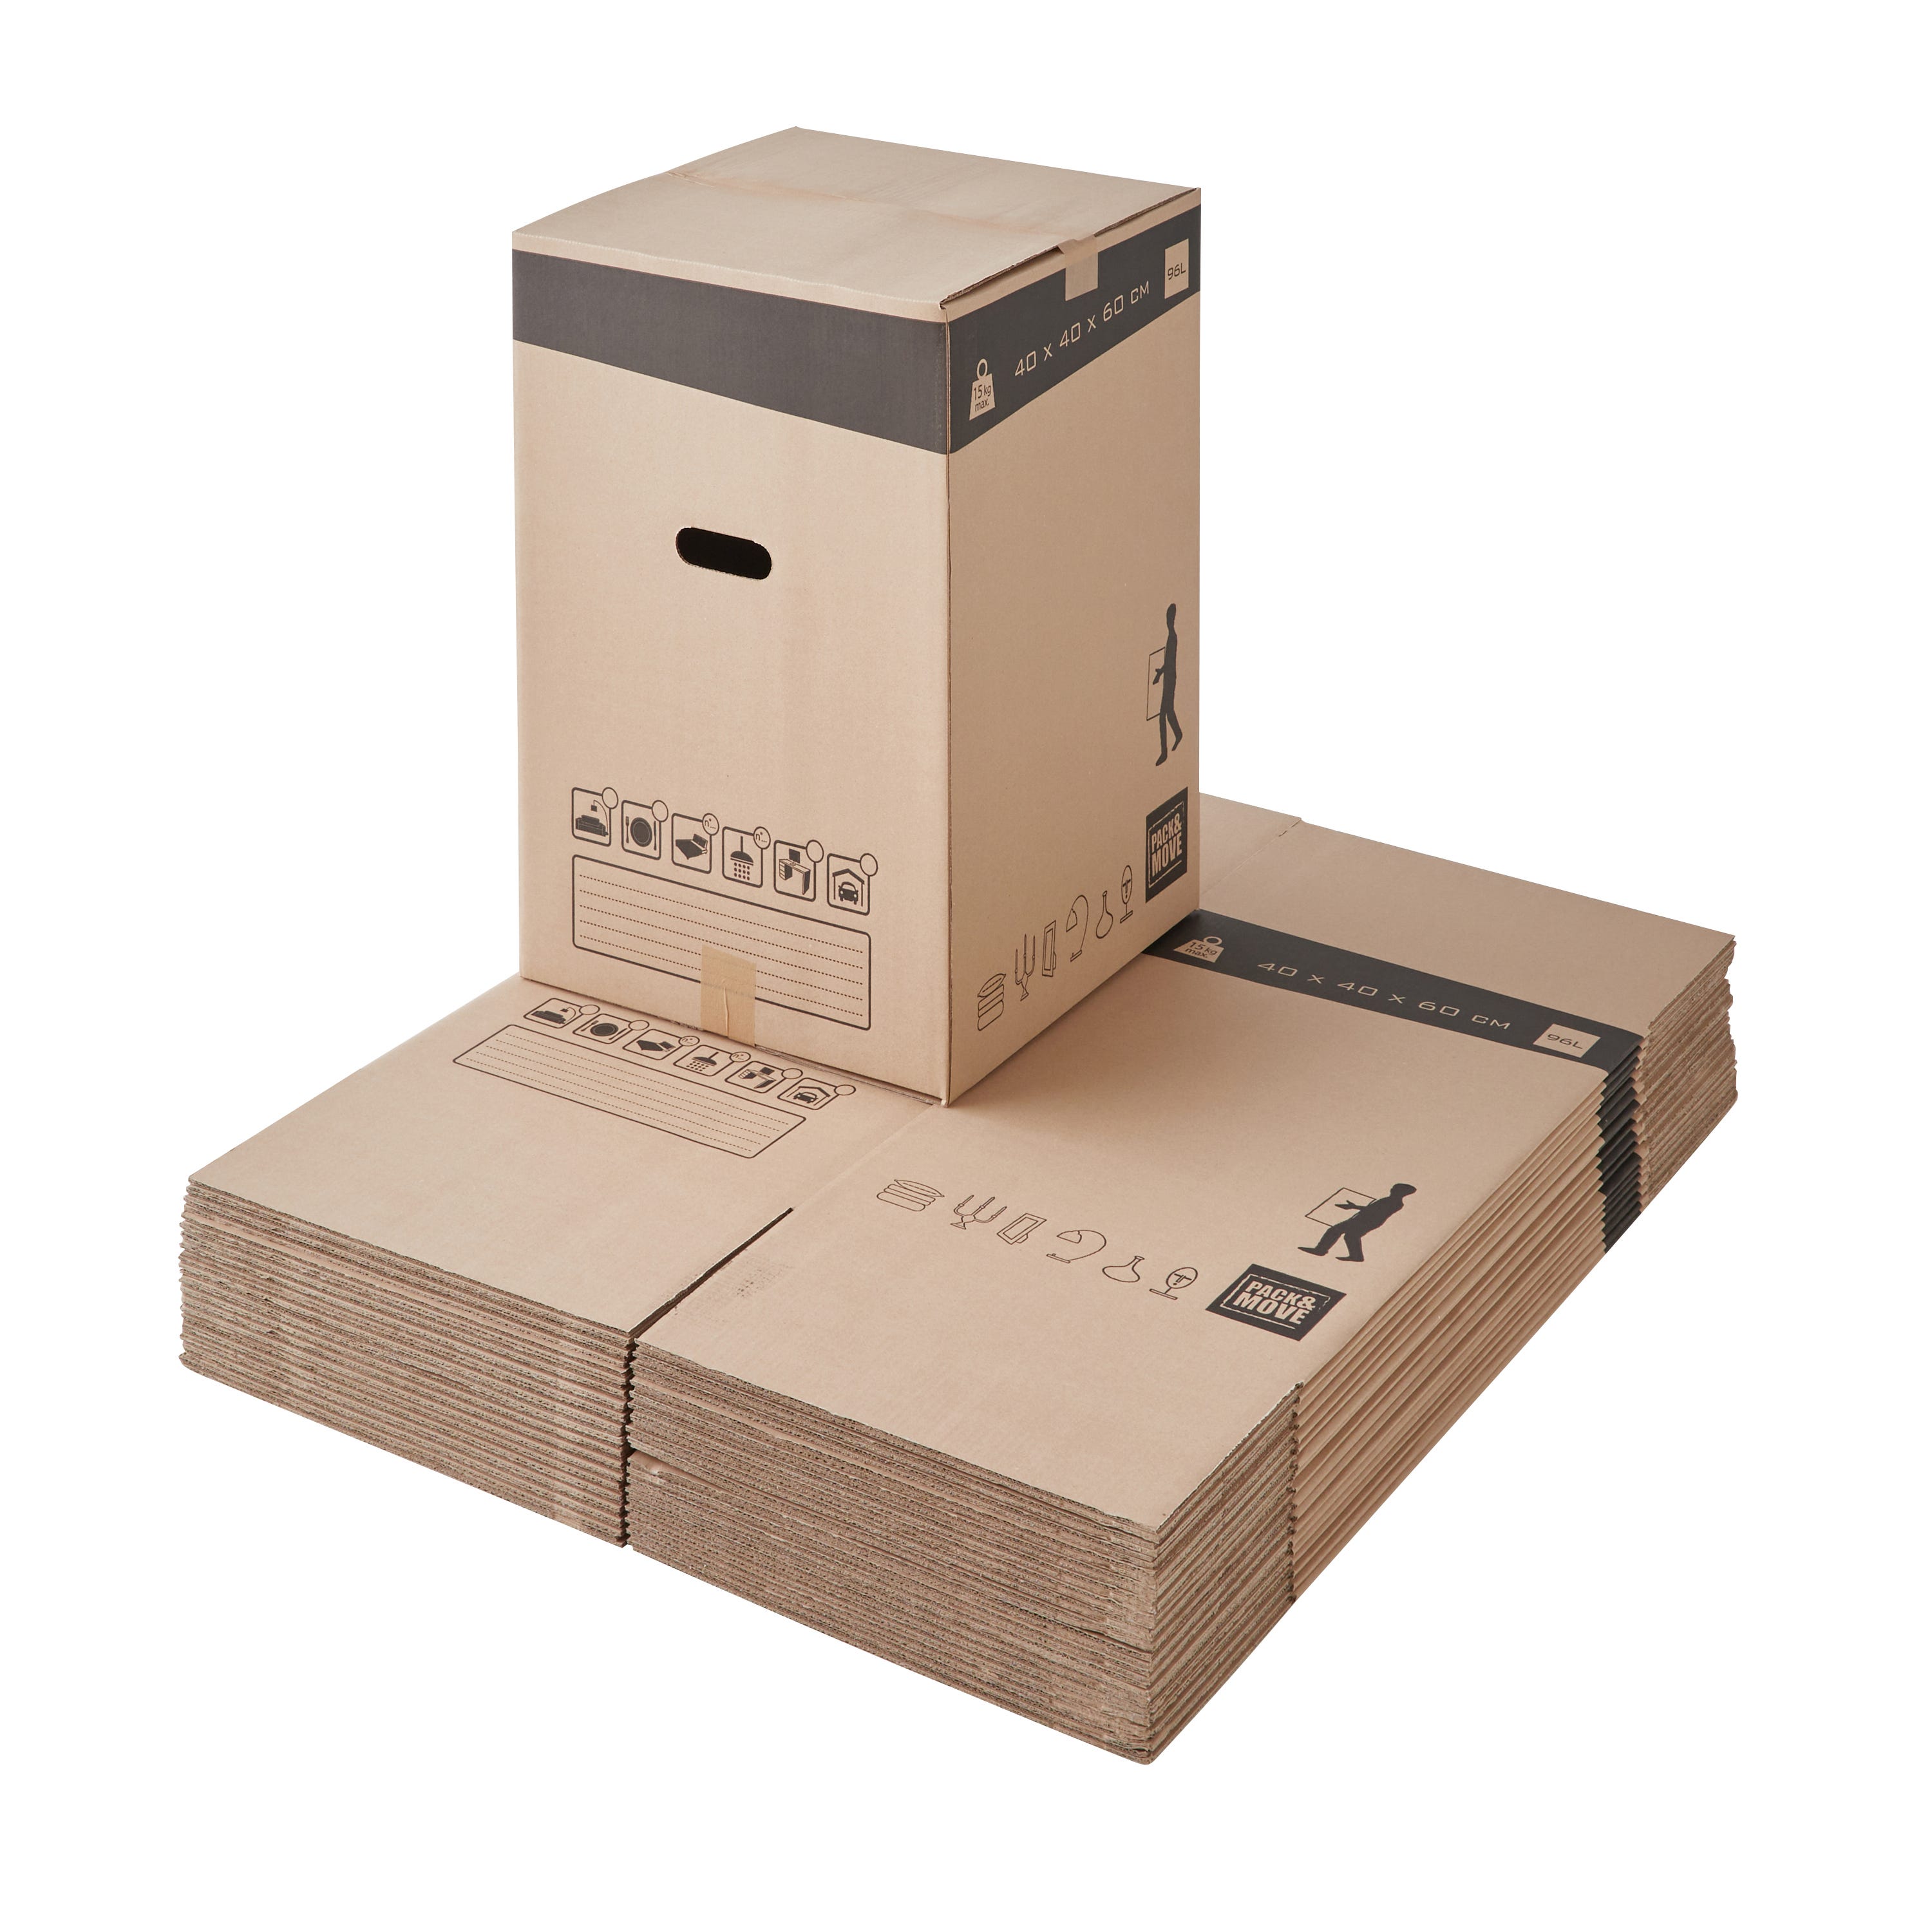 Comprar Cajas de Cartón para mudanzas - Caja Cartón Embalaje .Com